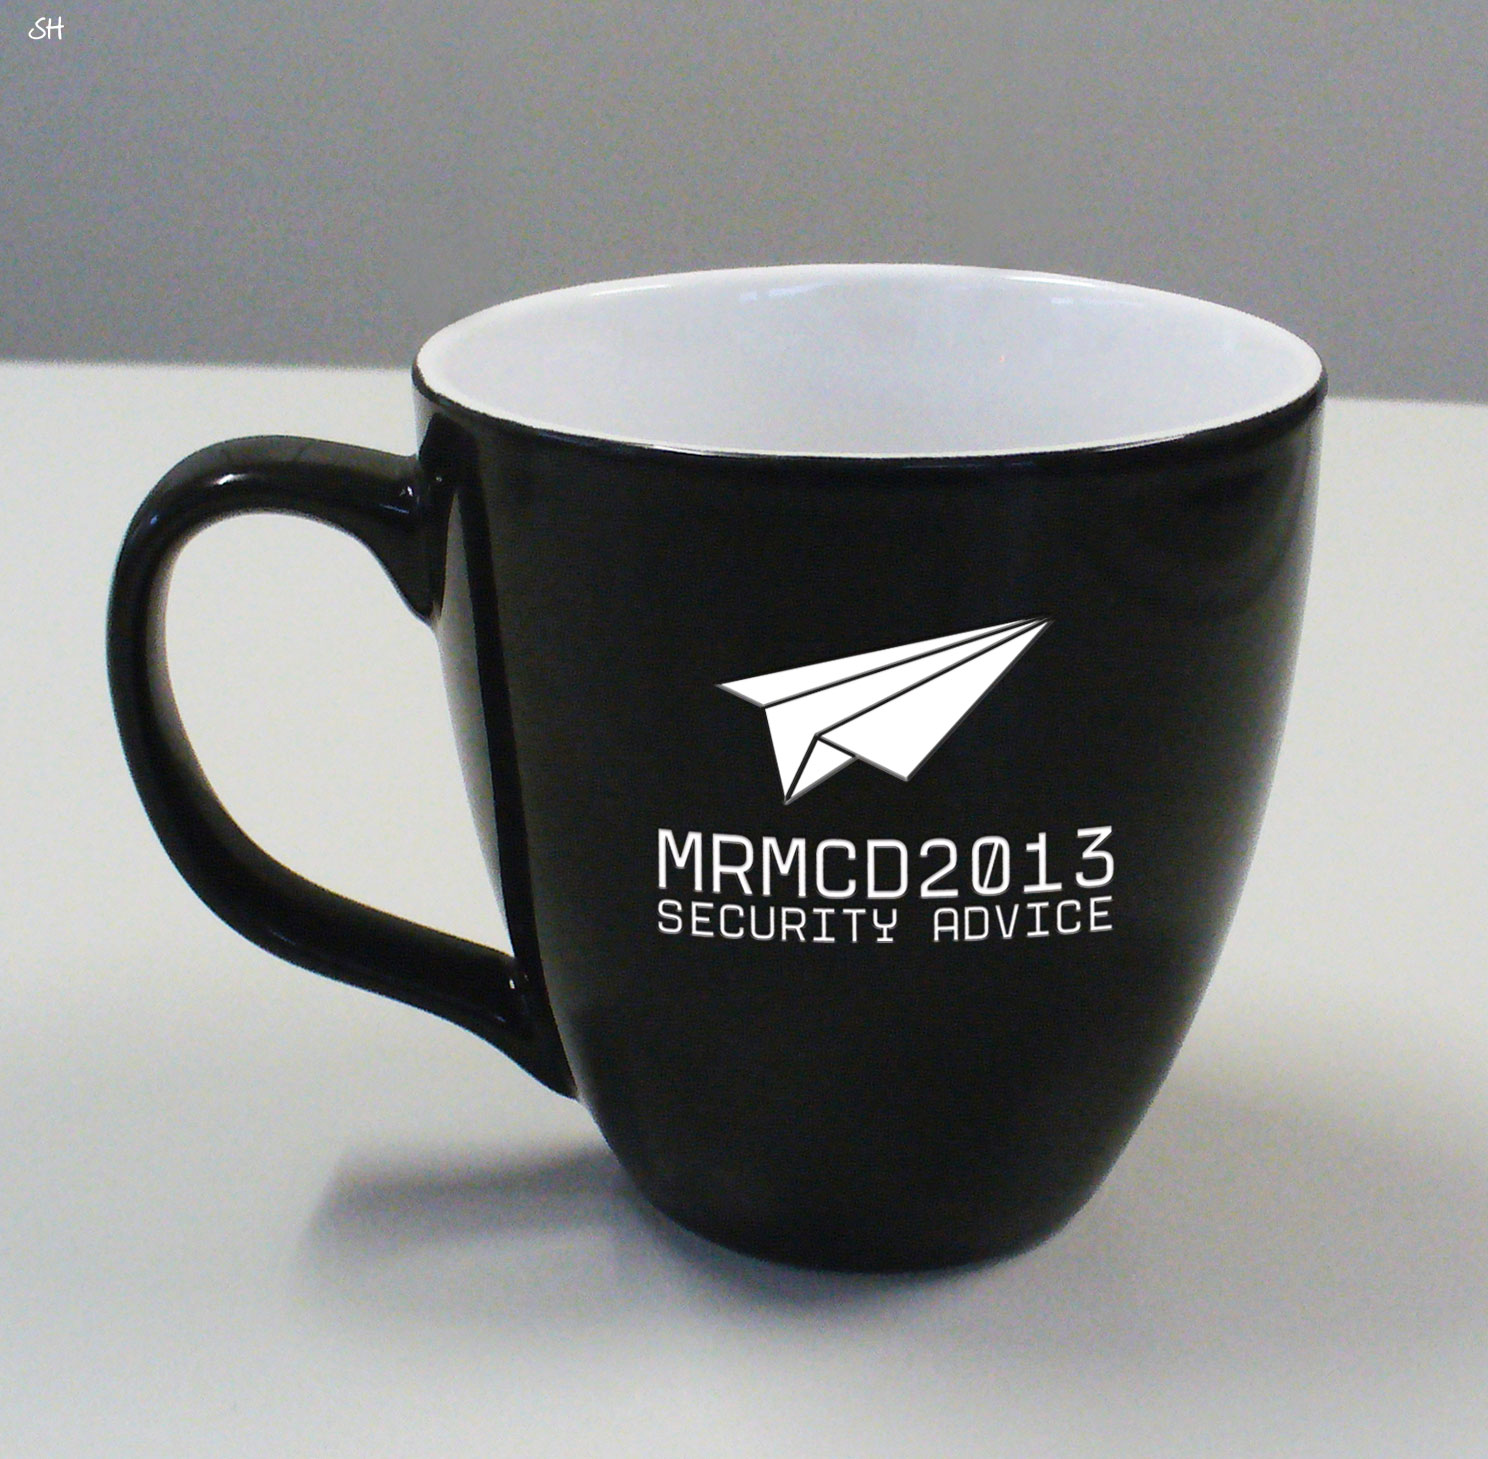 Eine Simulation der MRMCD2013 Tasse. Das Logo wird eingraviert und ist damit garantiert bis zum Tassenlebensende zu sehen...